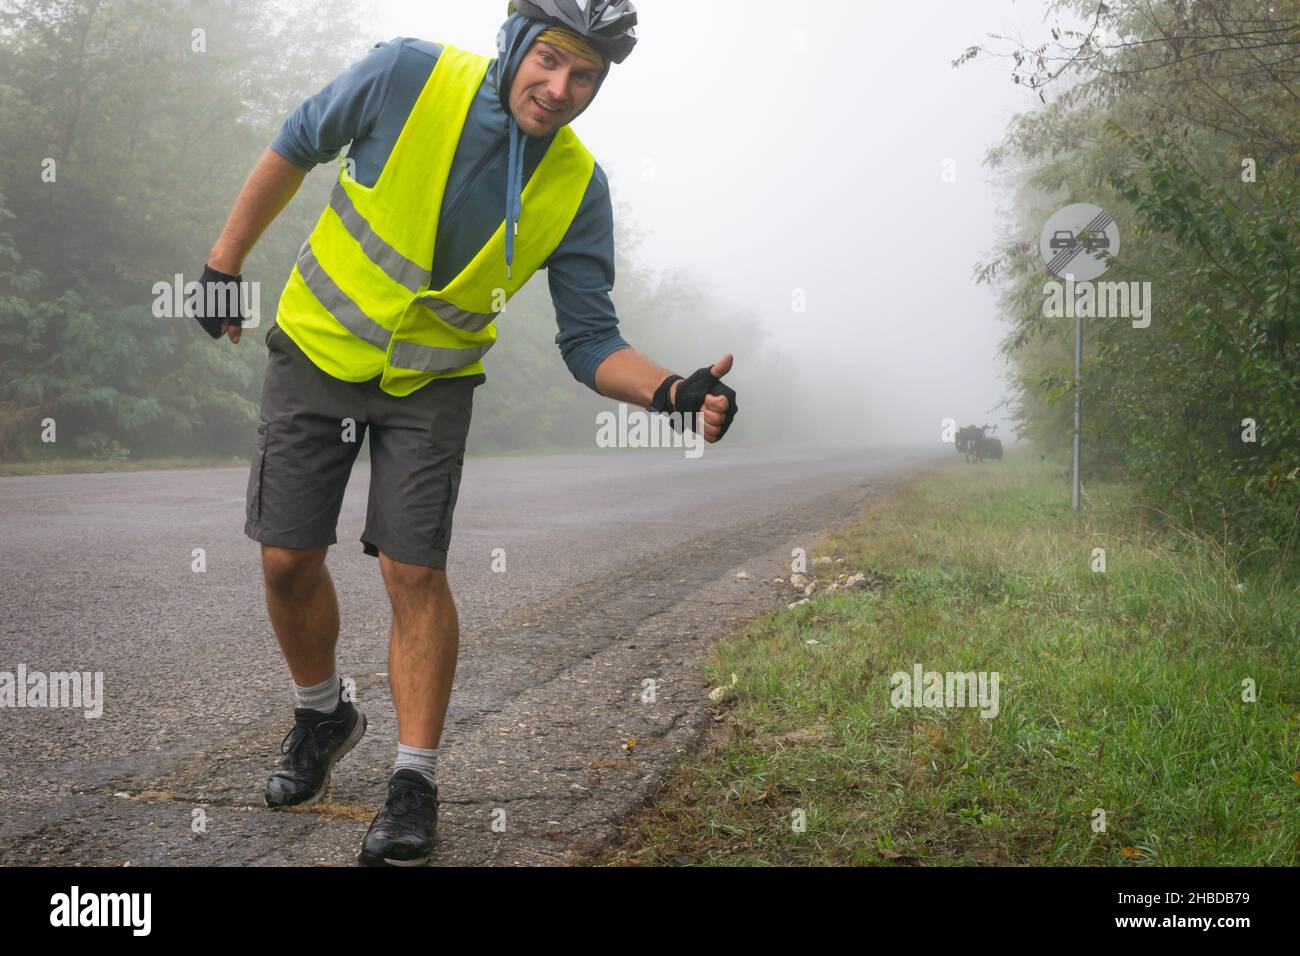 Ein glücklicher Radfahrer mit einer reflektierenden Weste zeigt bei nebligen Bedingungen die Daumen nach oben auf der Straße mit einem Touring-Fahrrad in der Nähe. Konzept für sicheres Radfahren unter b Stockfoto